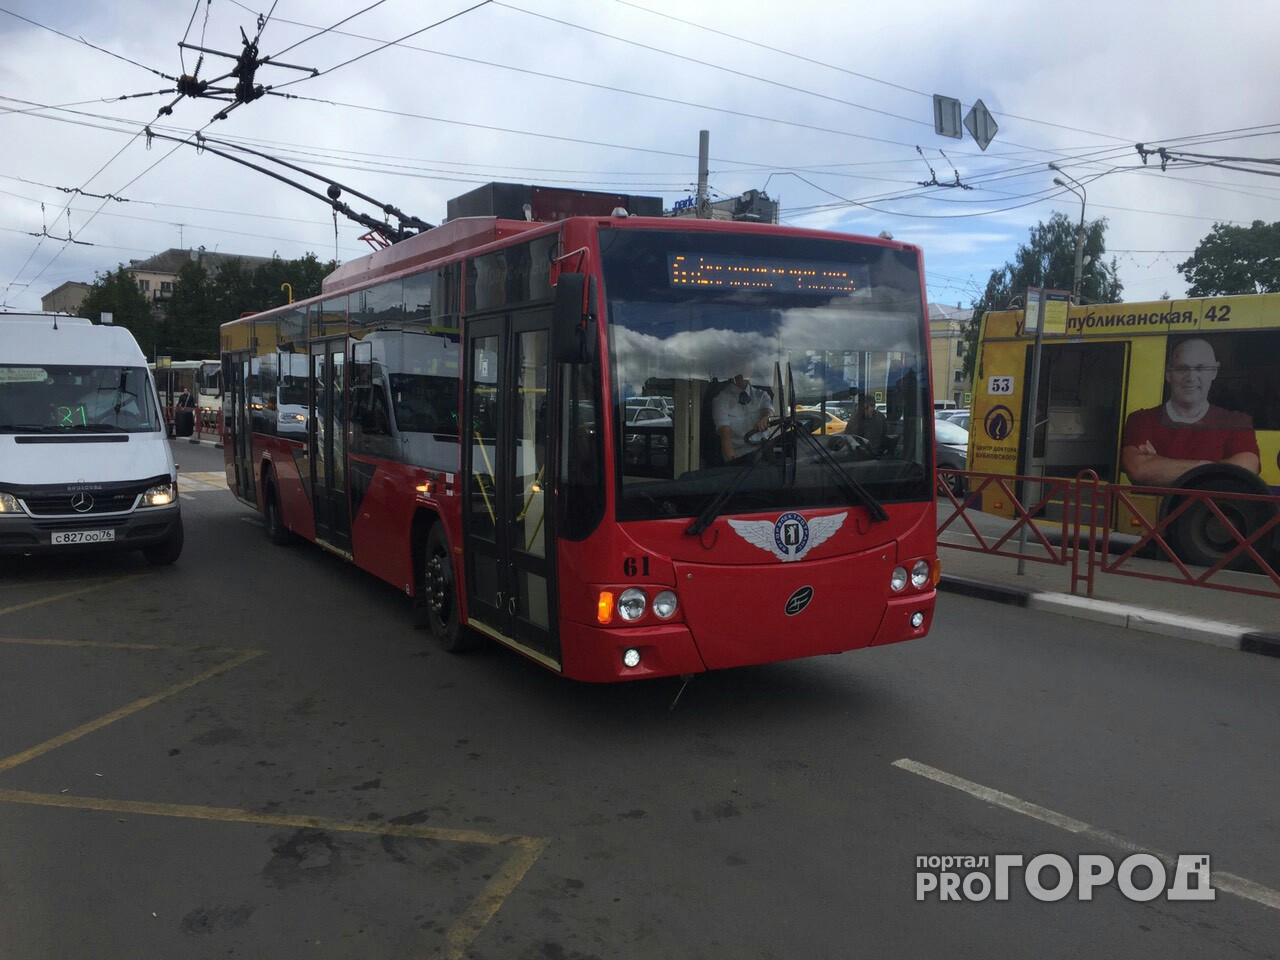 На дорогах Ярославля появились красные троллейбусы:  в чем их преимущество